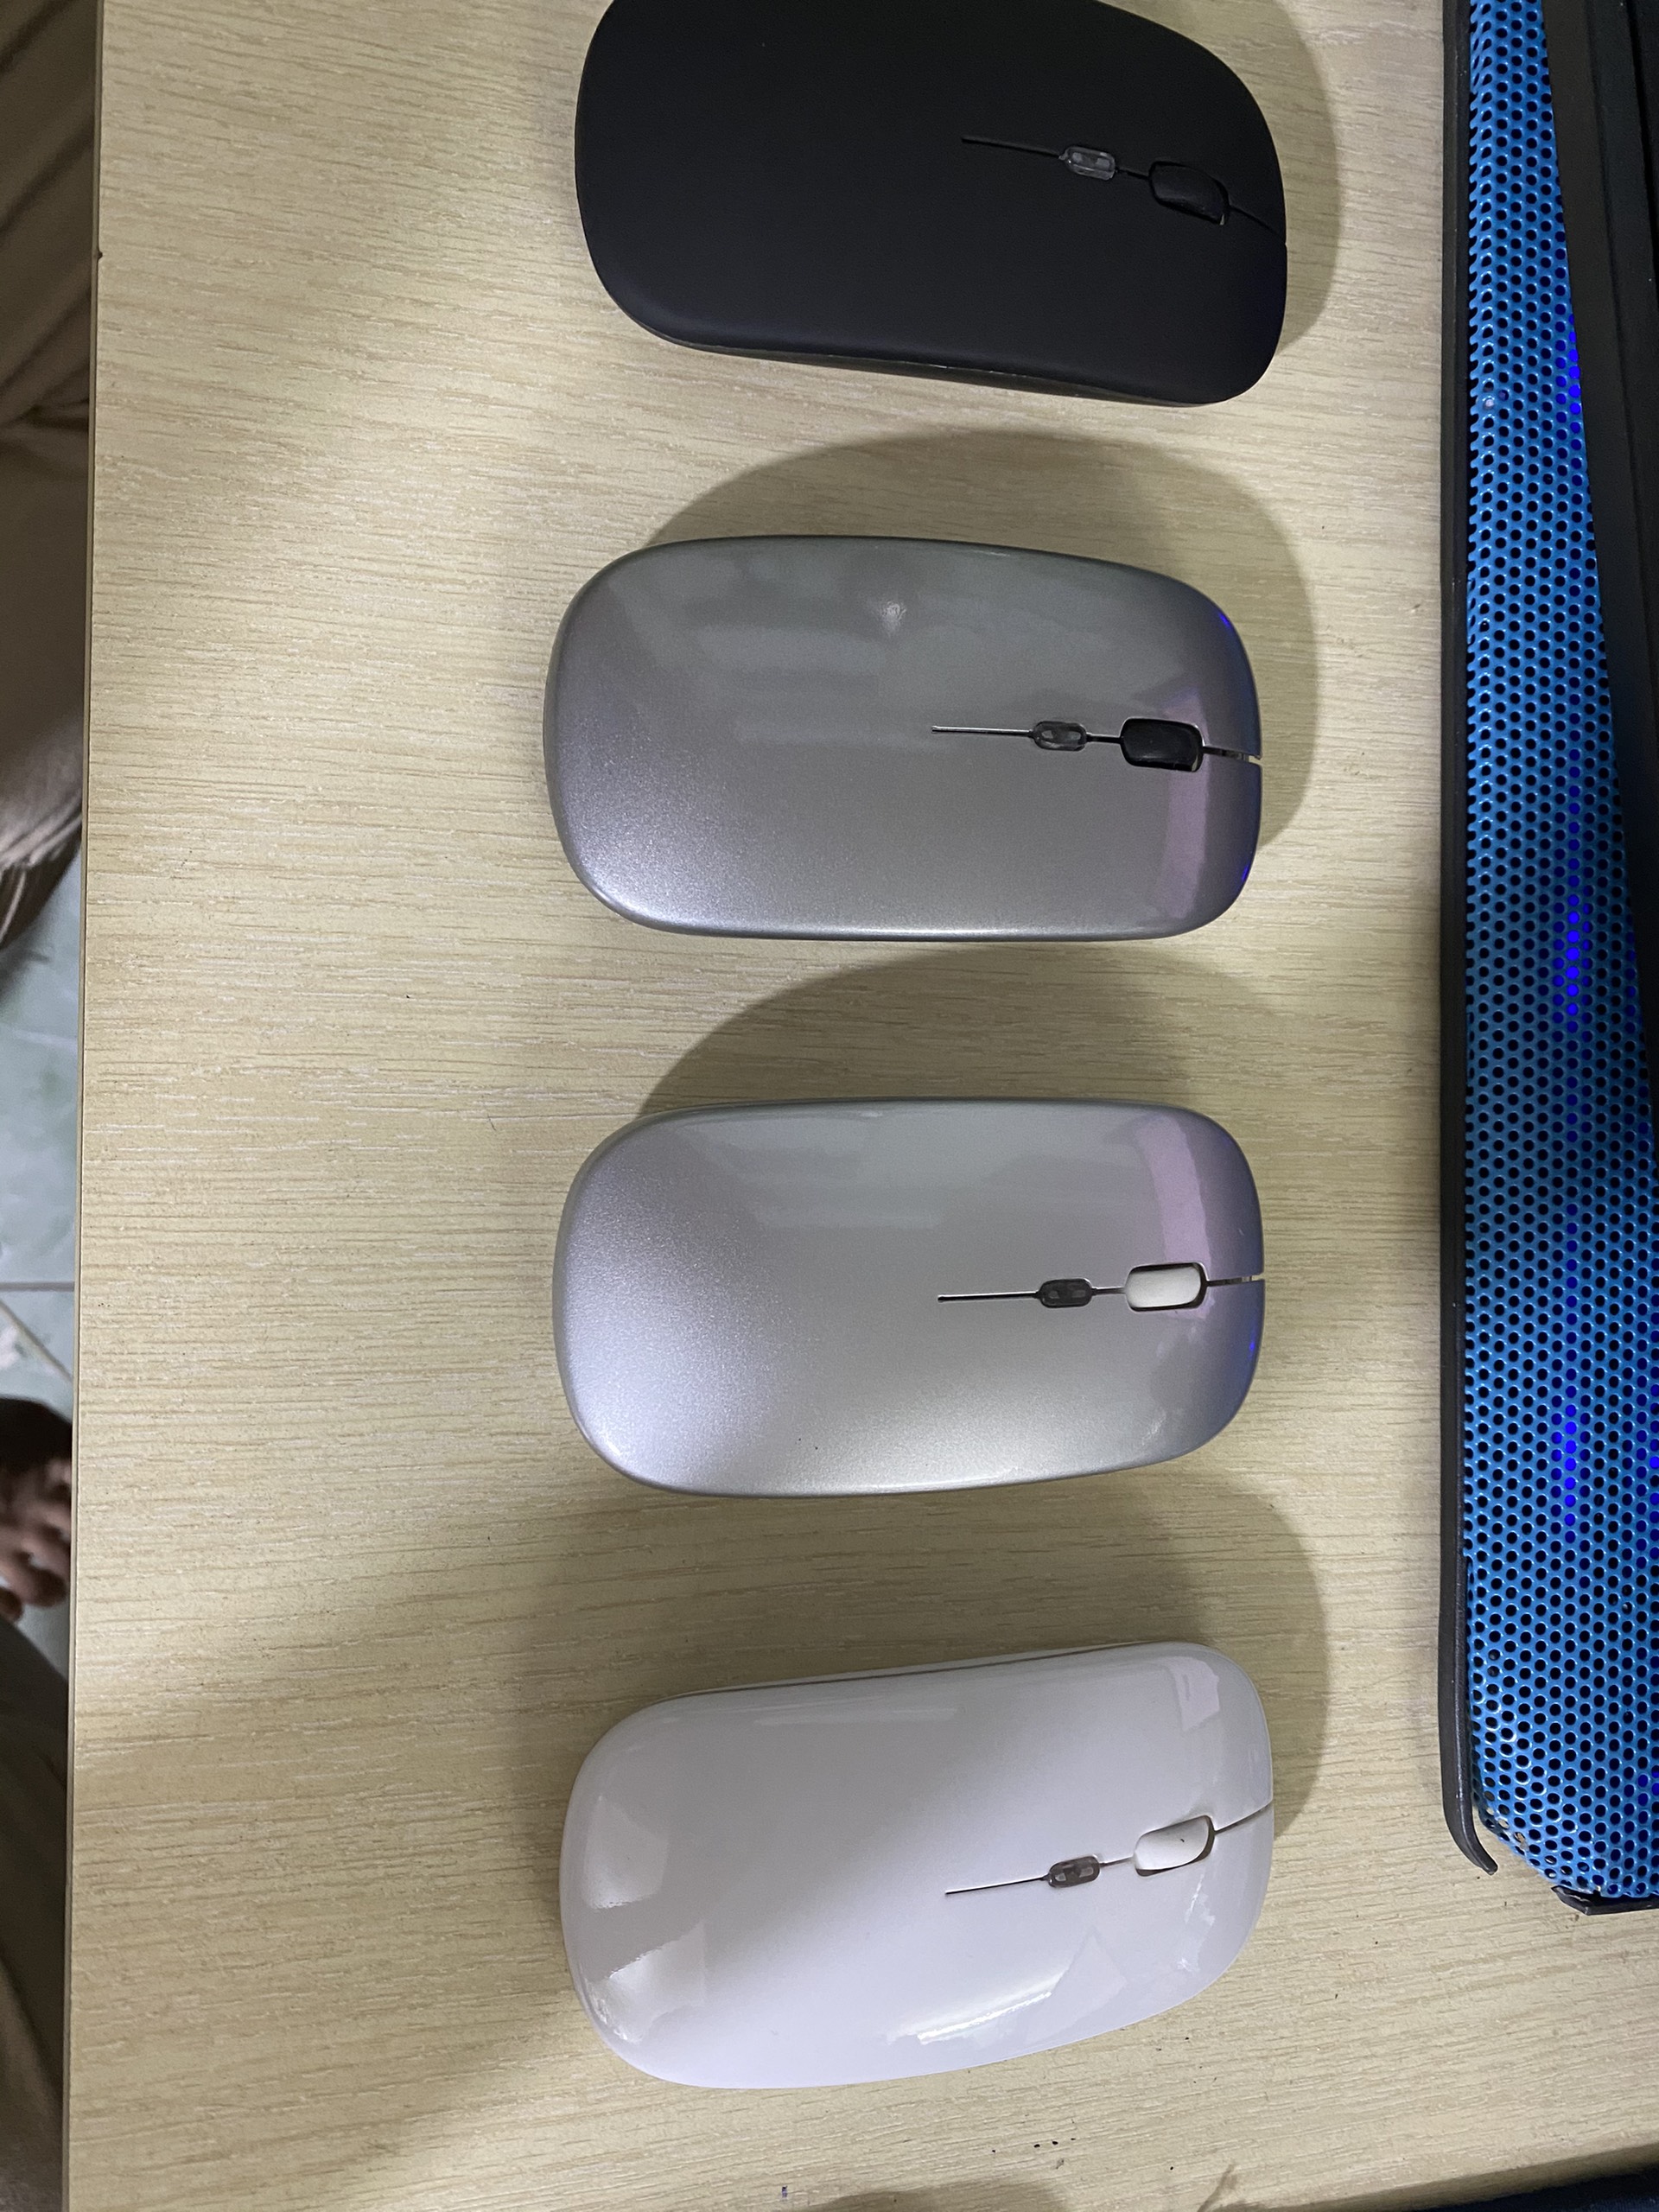 Chuột không dây tự sạc  (Wireless/Bluetooth Mouse Re-chargeable) chuyên dùng cho Máy tính, Laptop, Phone, Tivi